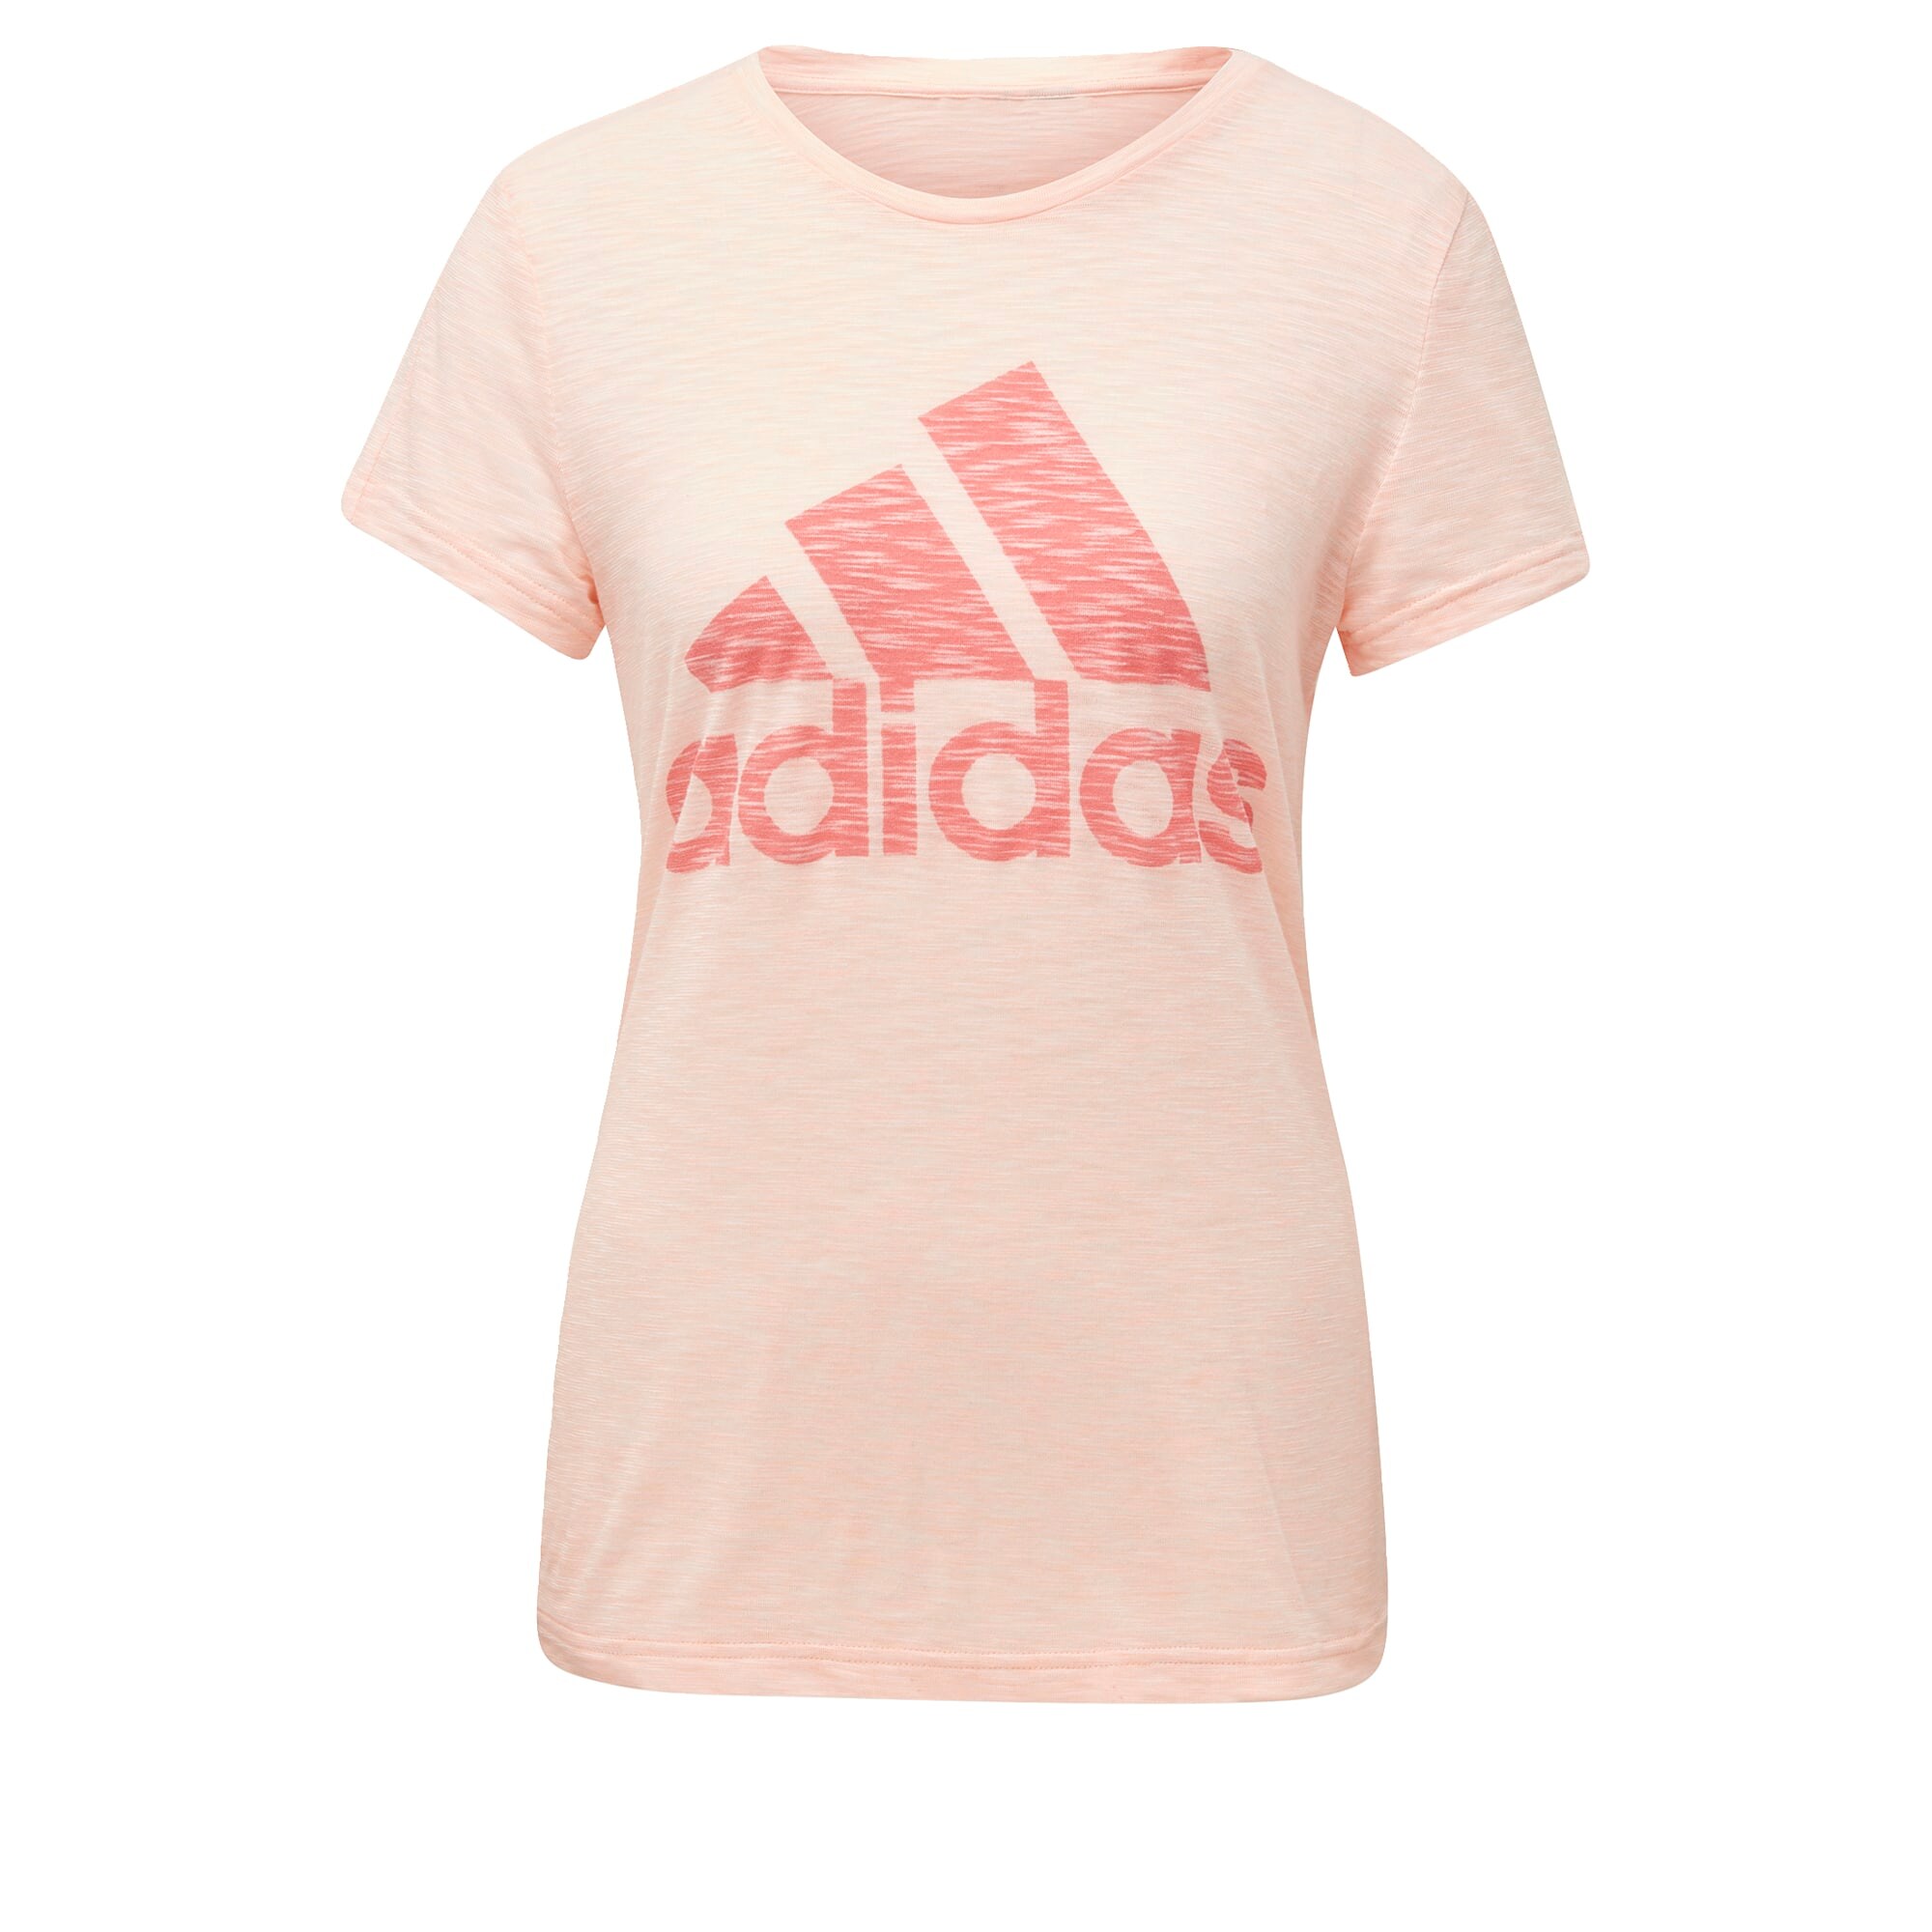 ADIDAS PERFORMANCE Sportiniai marškinėliai  rožinė / rožių spalva